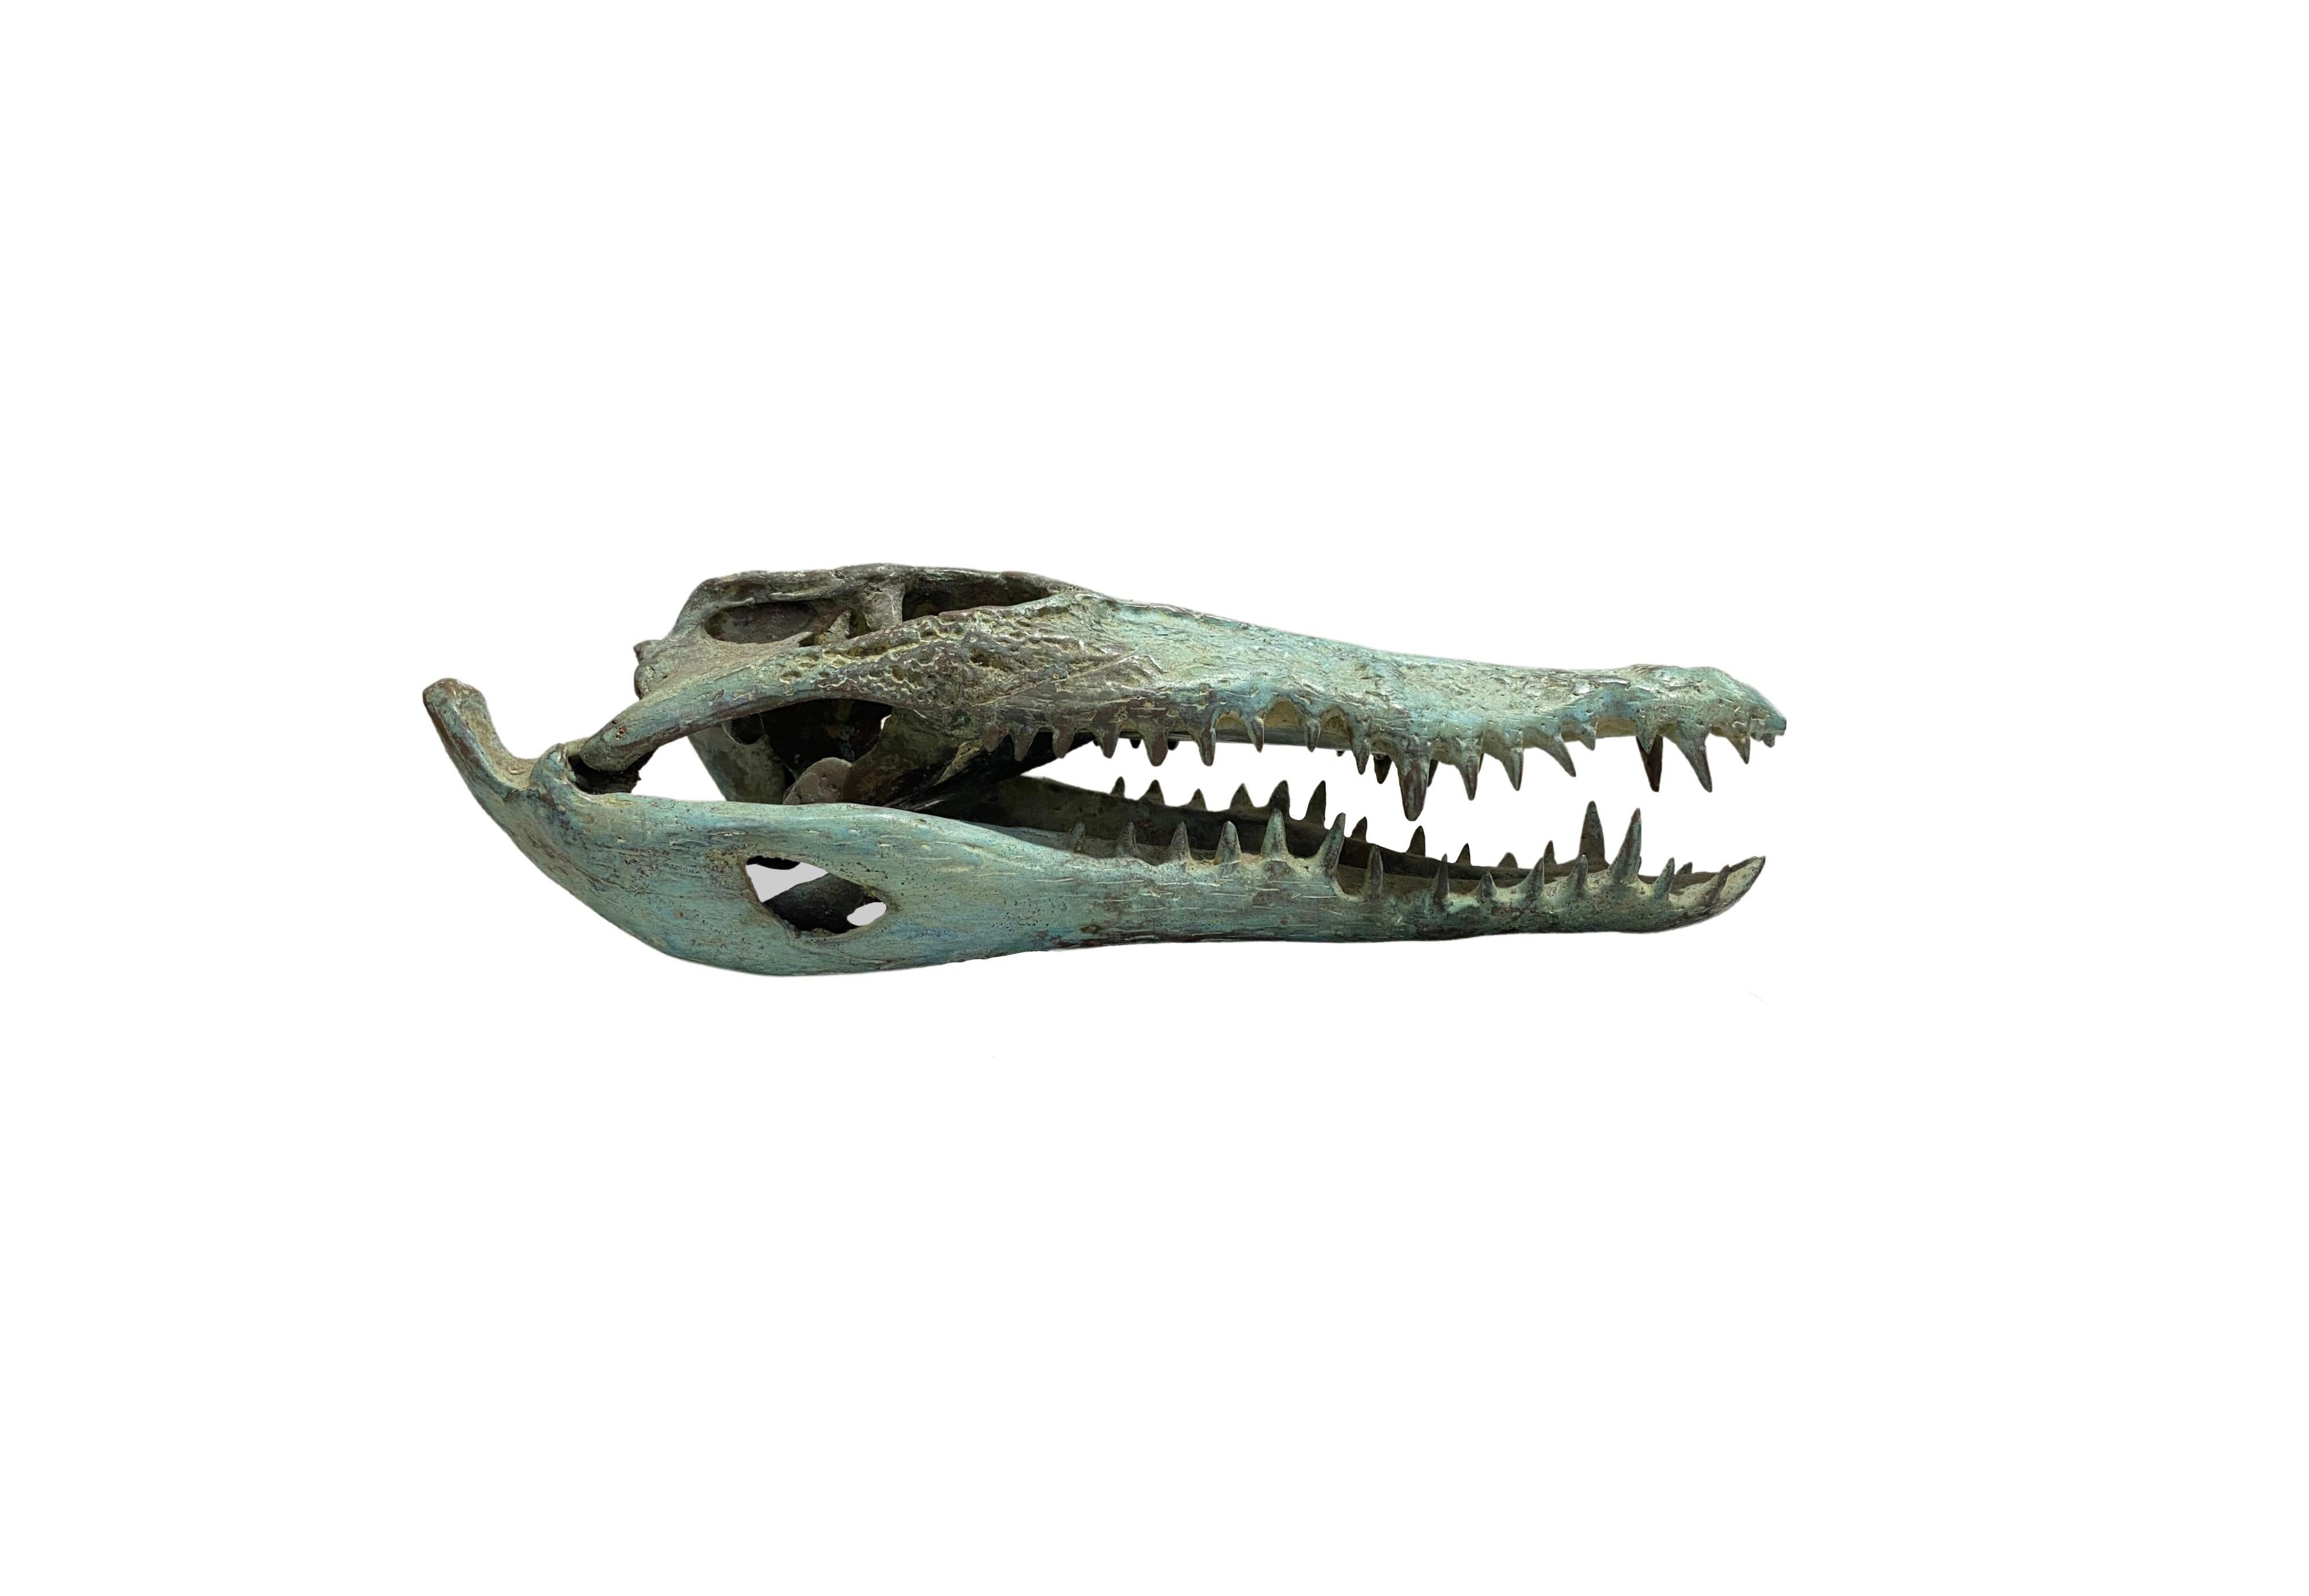 Un merveilleux exemple de crâne de crocodile en bronze moulé en creux. Cette pièce présente de merveilleux détails et une ressemblance avec un vrai spécimen. Une pièce exotique qui ne manquera pas de susciter la conversation. Convient aux espaces